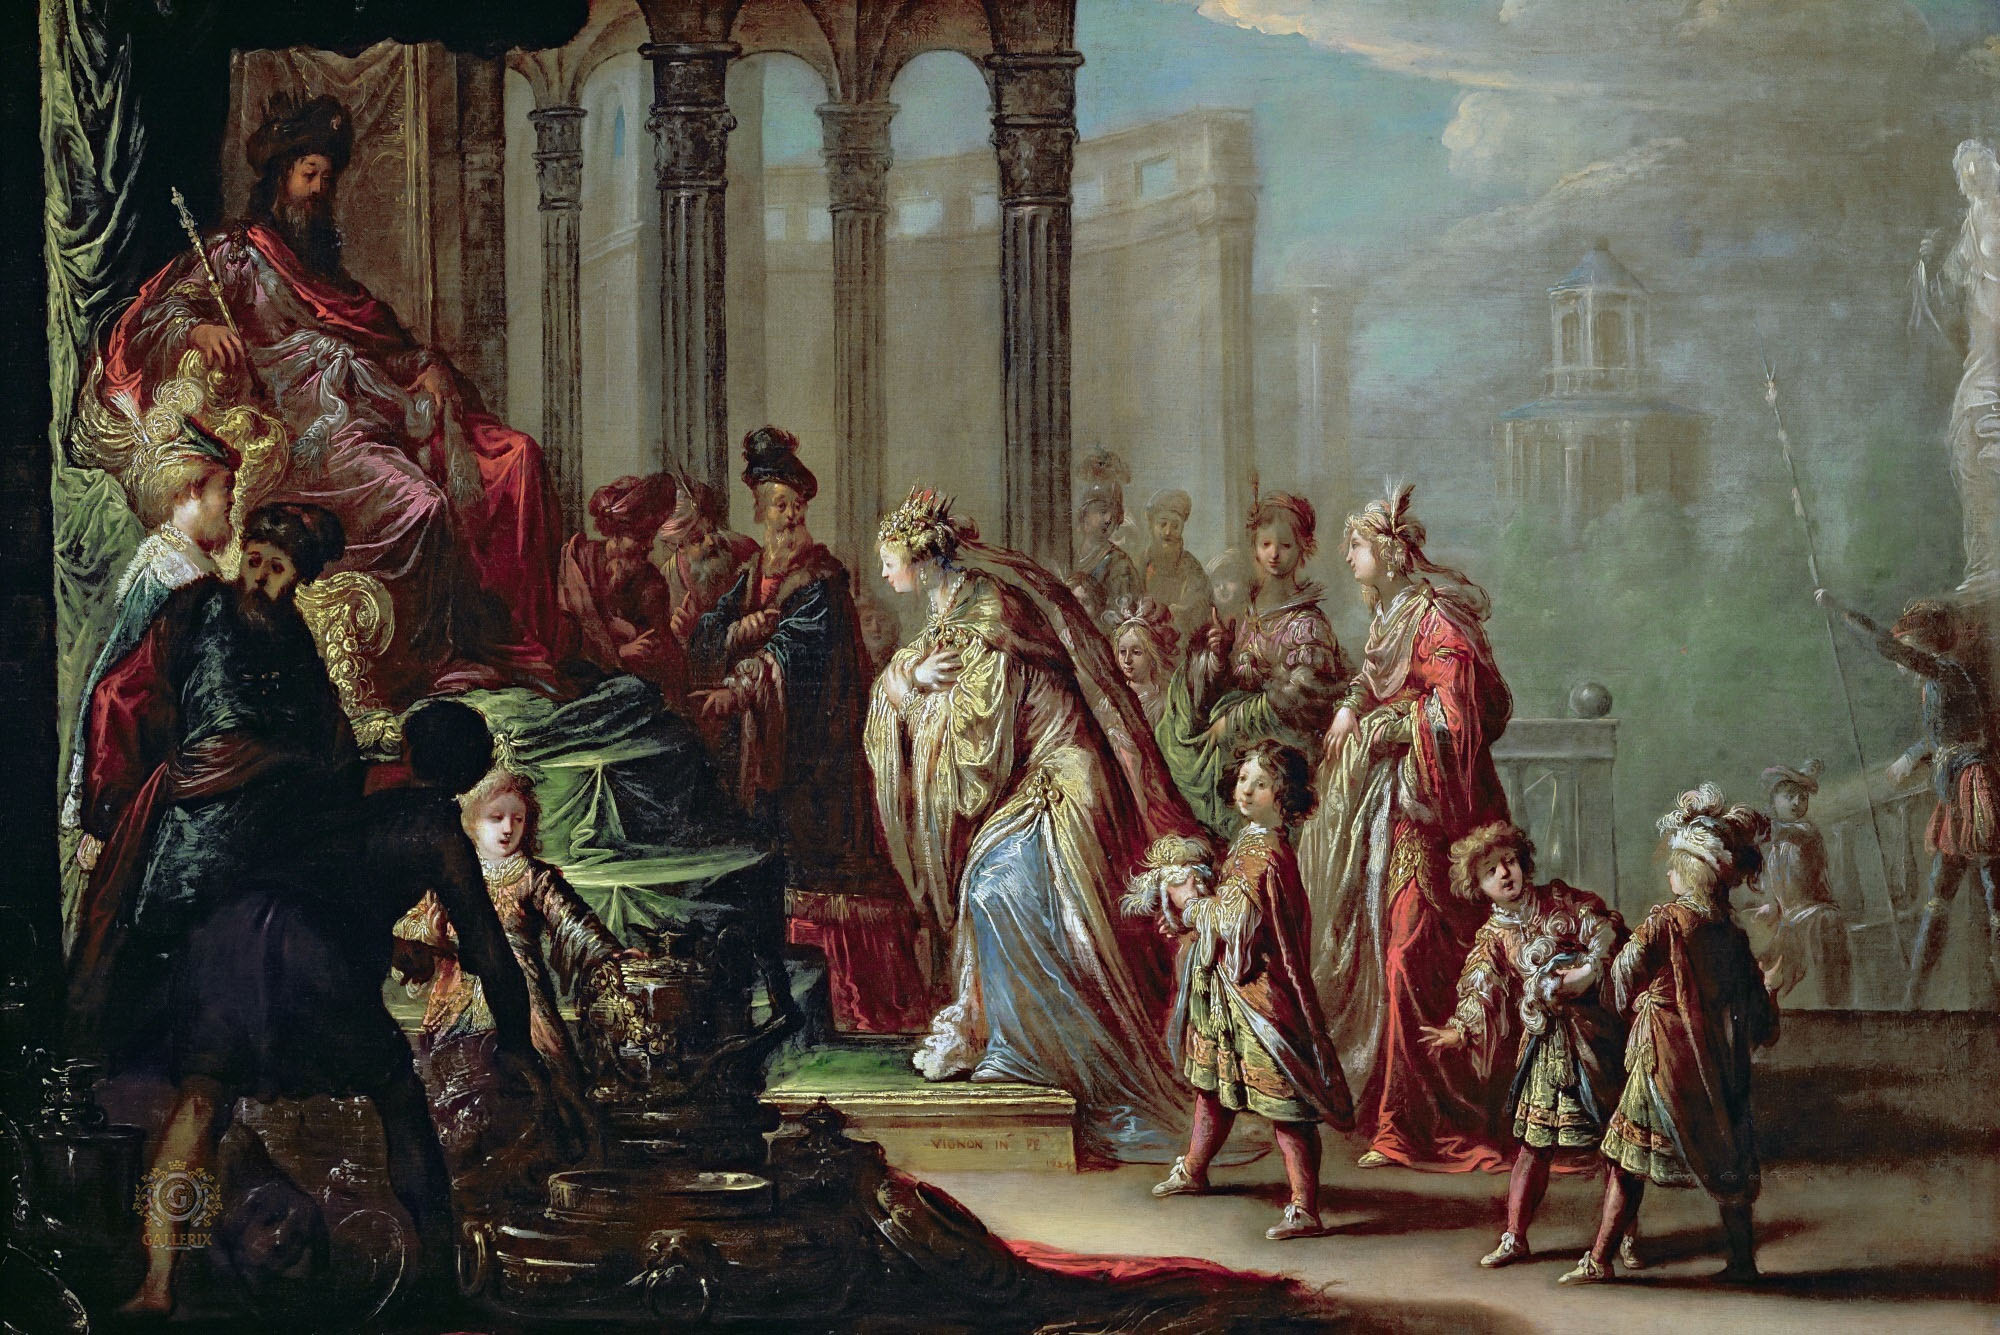 Клод Виньон. "Соломон и царица Савская или Есфирь перед Артаксерксом". 1624. Лувр, Париж.